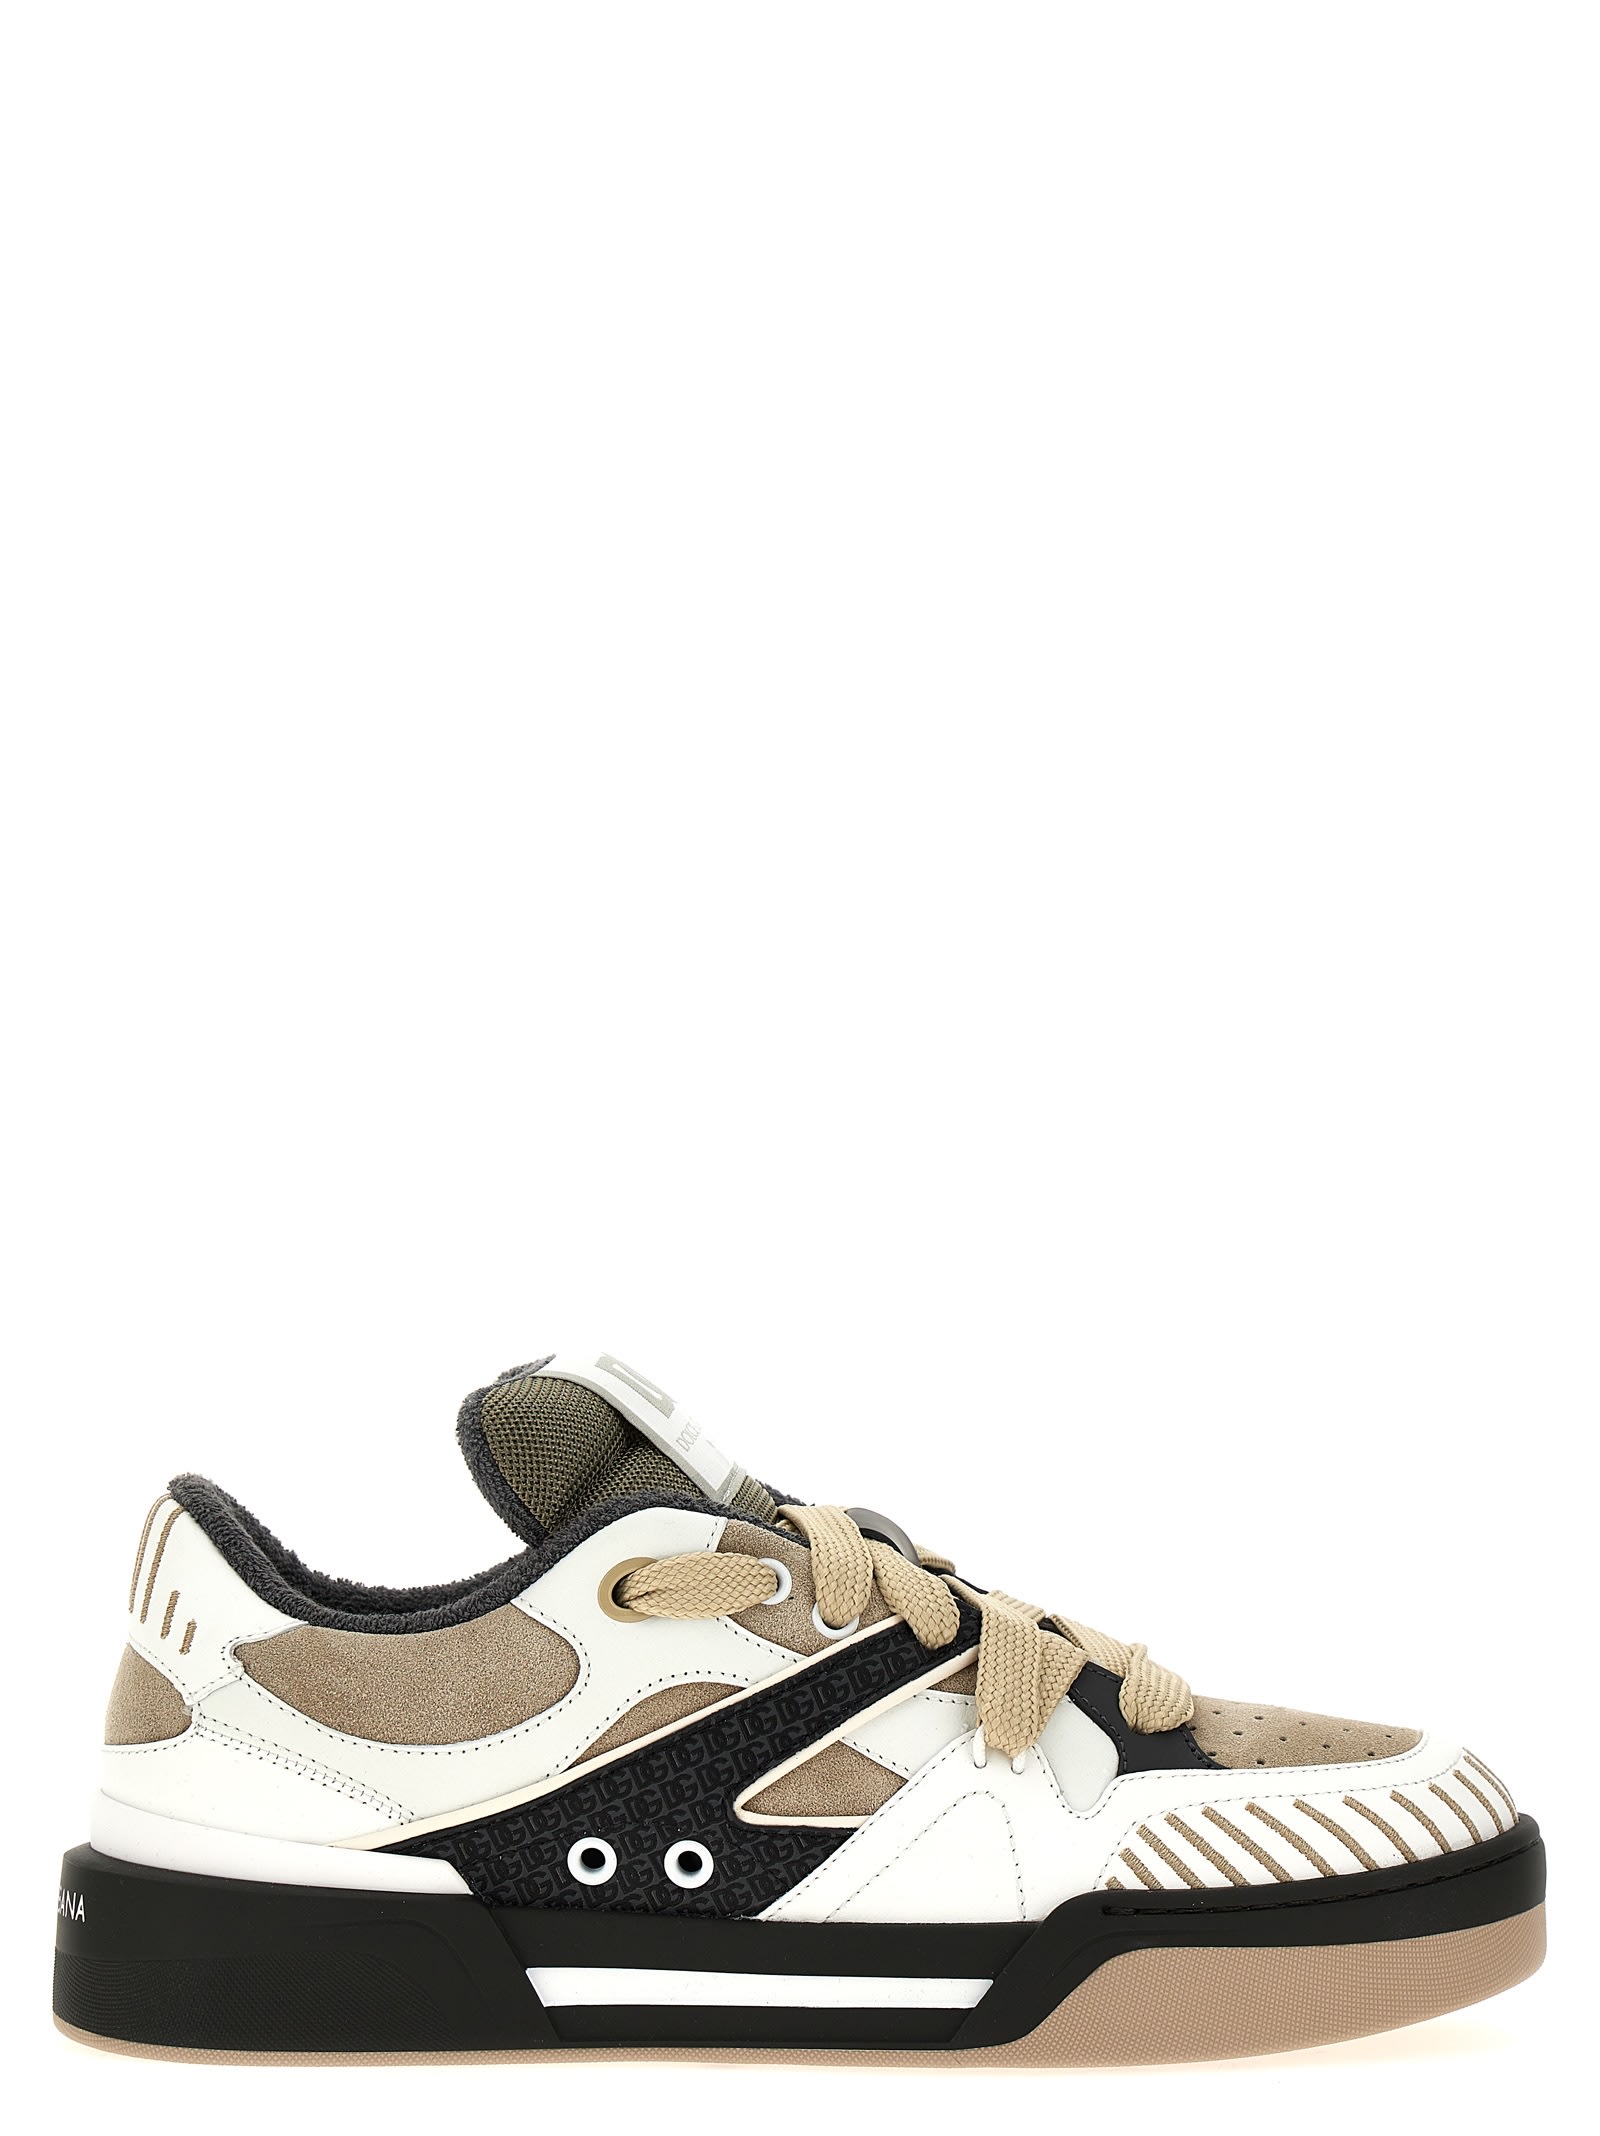 Dolce & Gabbana New Roma Sneakers In Dove Grey